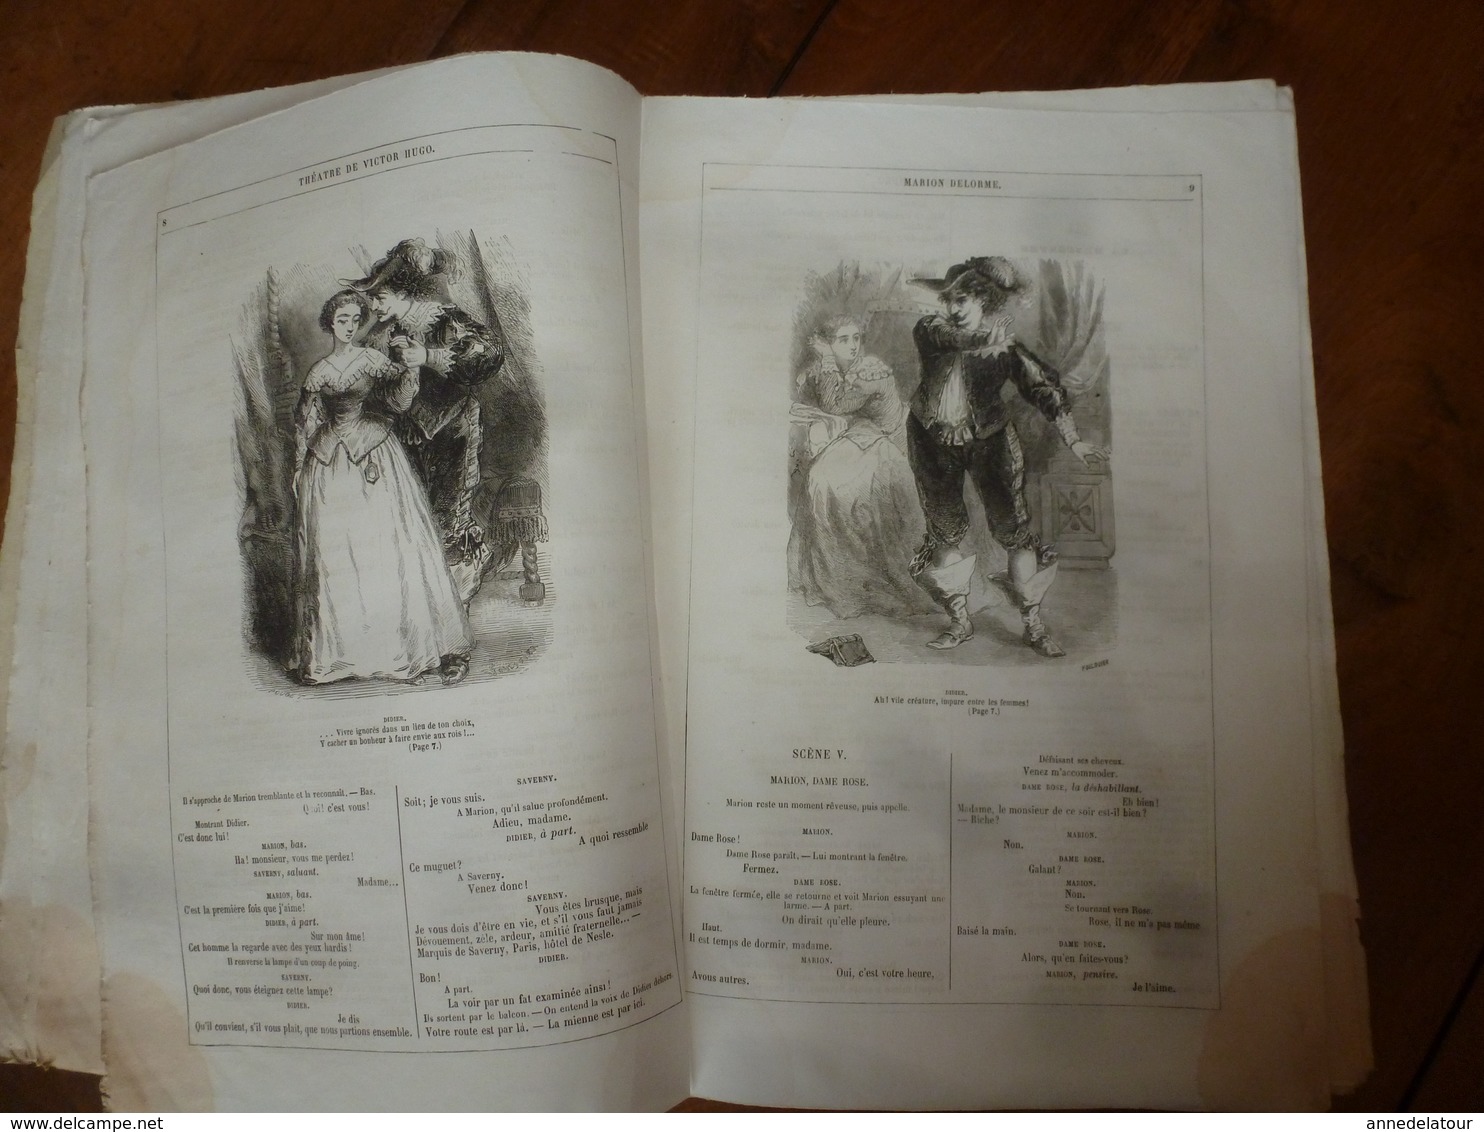 1854 MARION DELORME -Théâtre de Victor Hugo - Illustration par Foulquier- Edition Hetzel